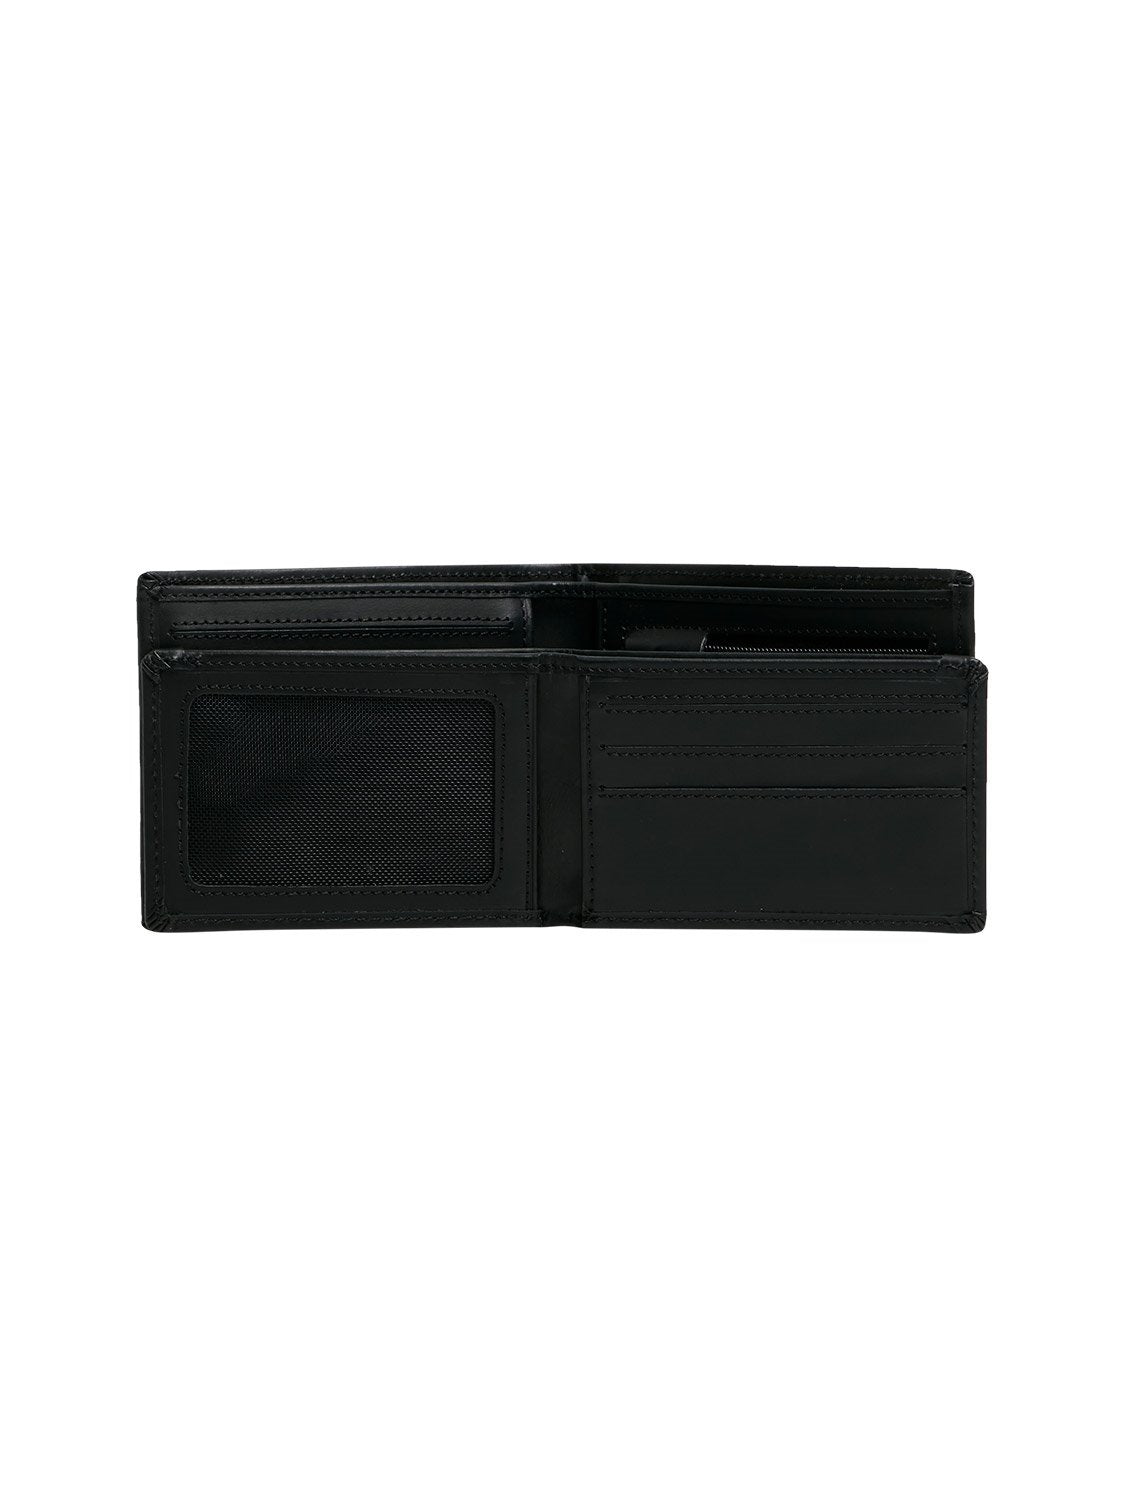 Quiksilver Men's Gutherie IV Bi-Fold Wallet